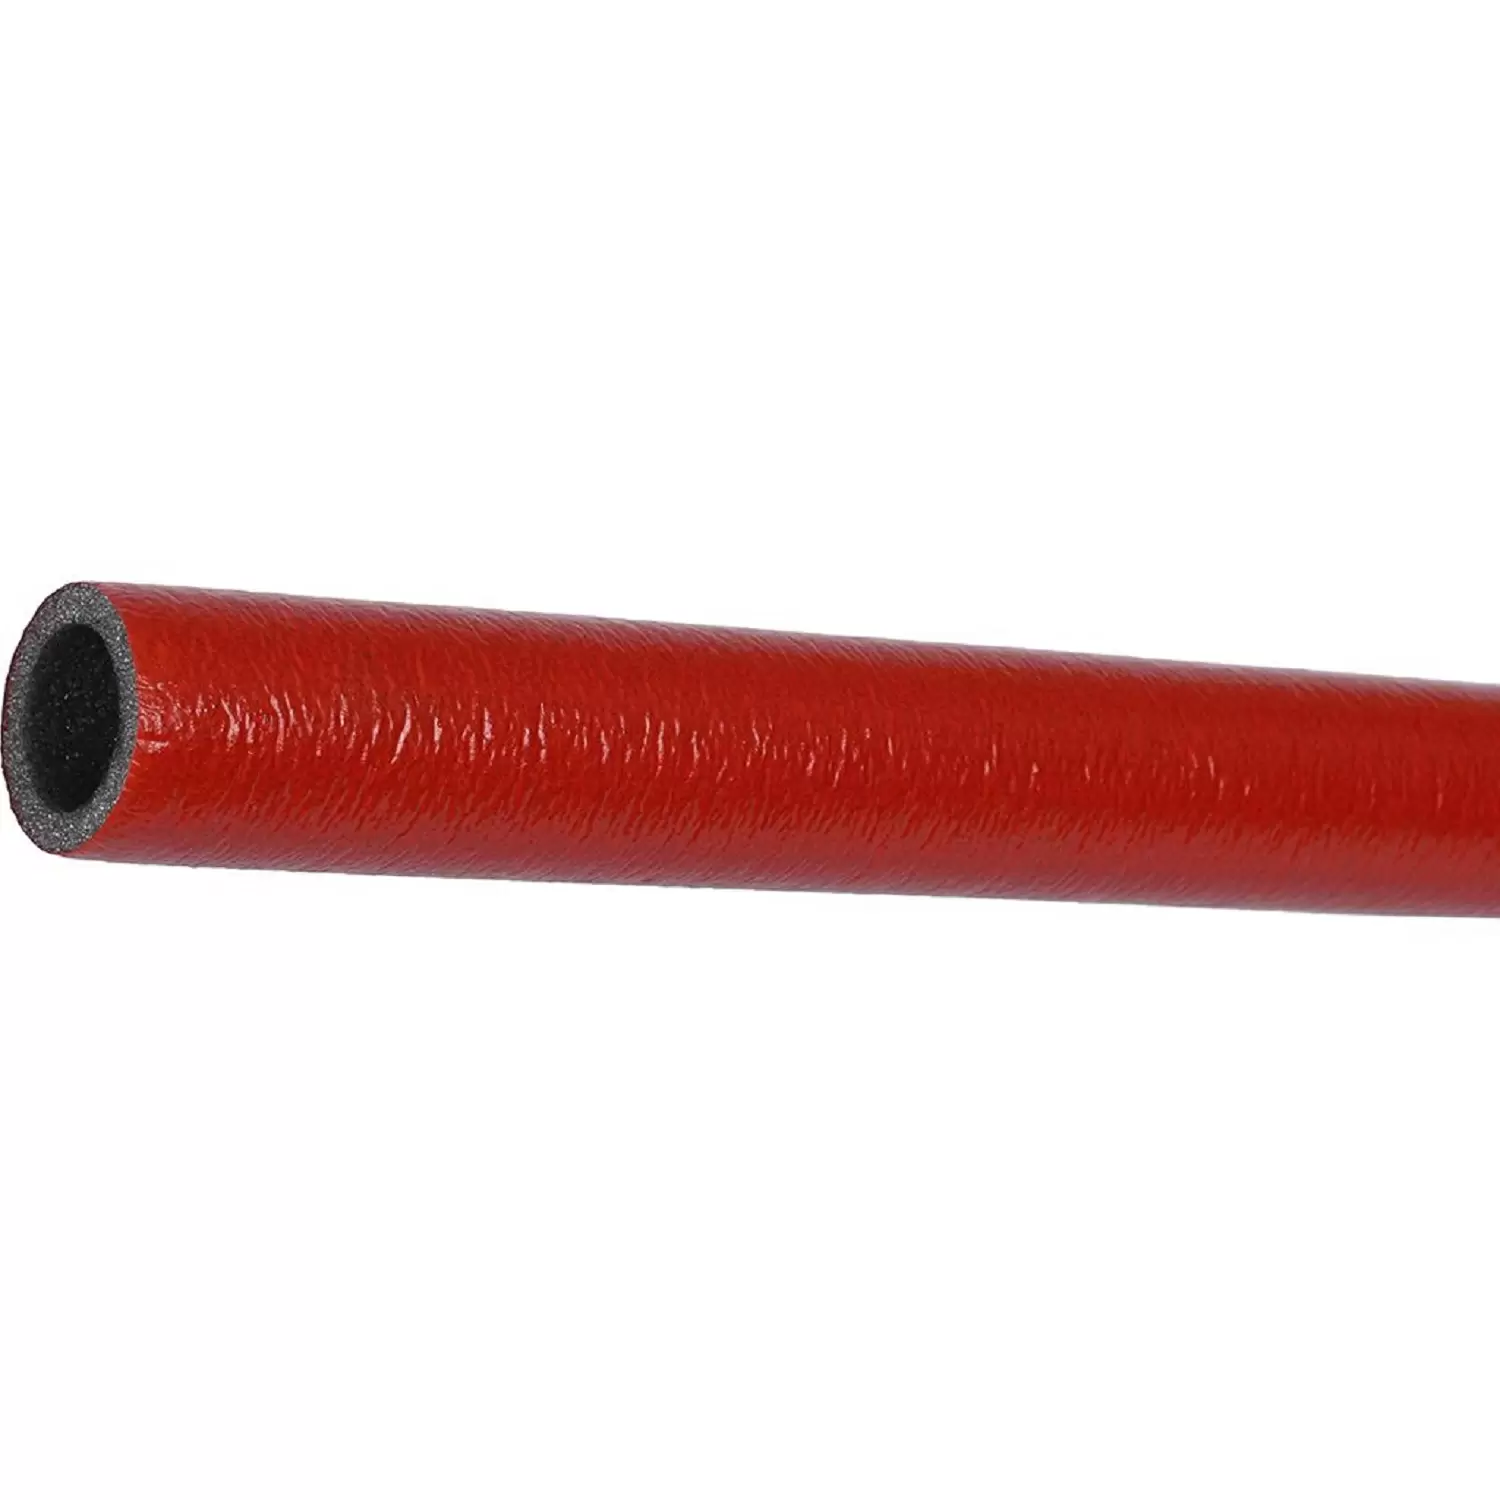 Теплоизоляция Энергофлекс супер протект 28/6 для труб диаметром 25 мм красная, трубка 2 м